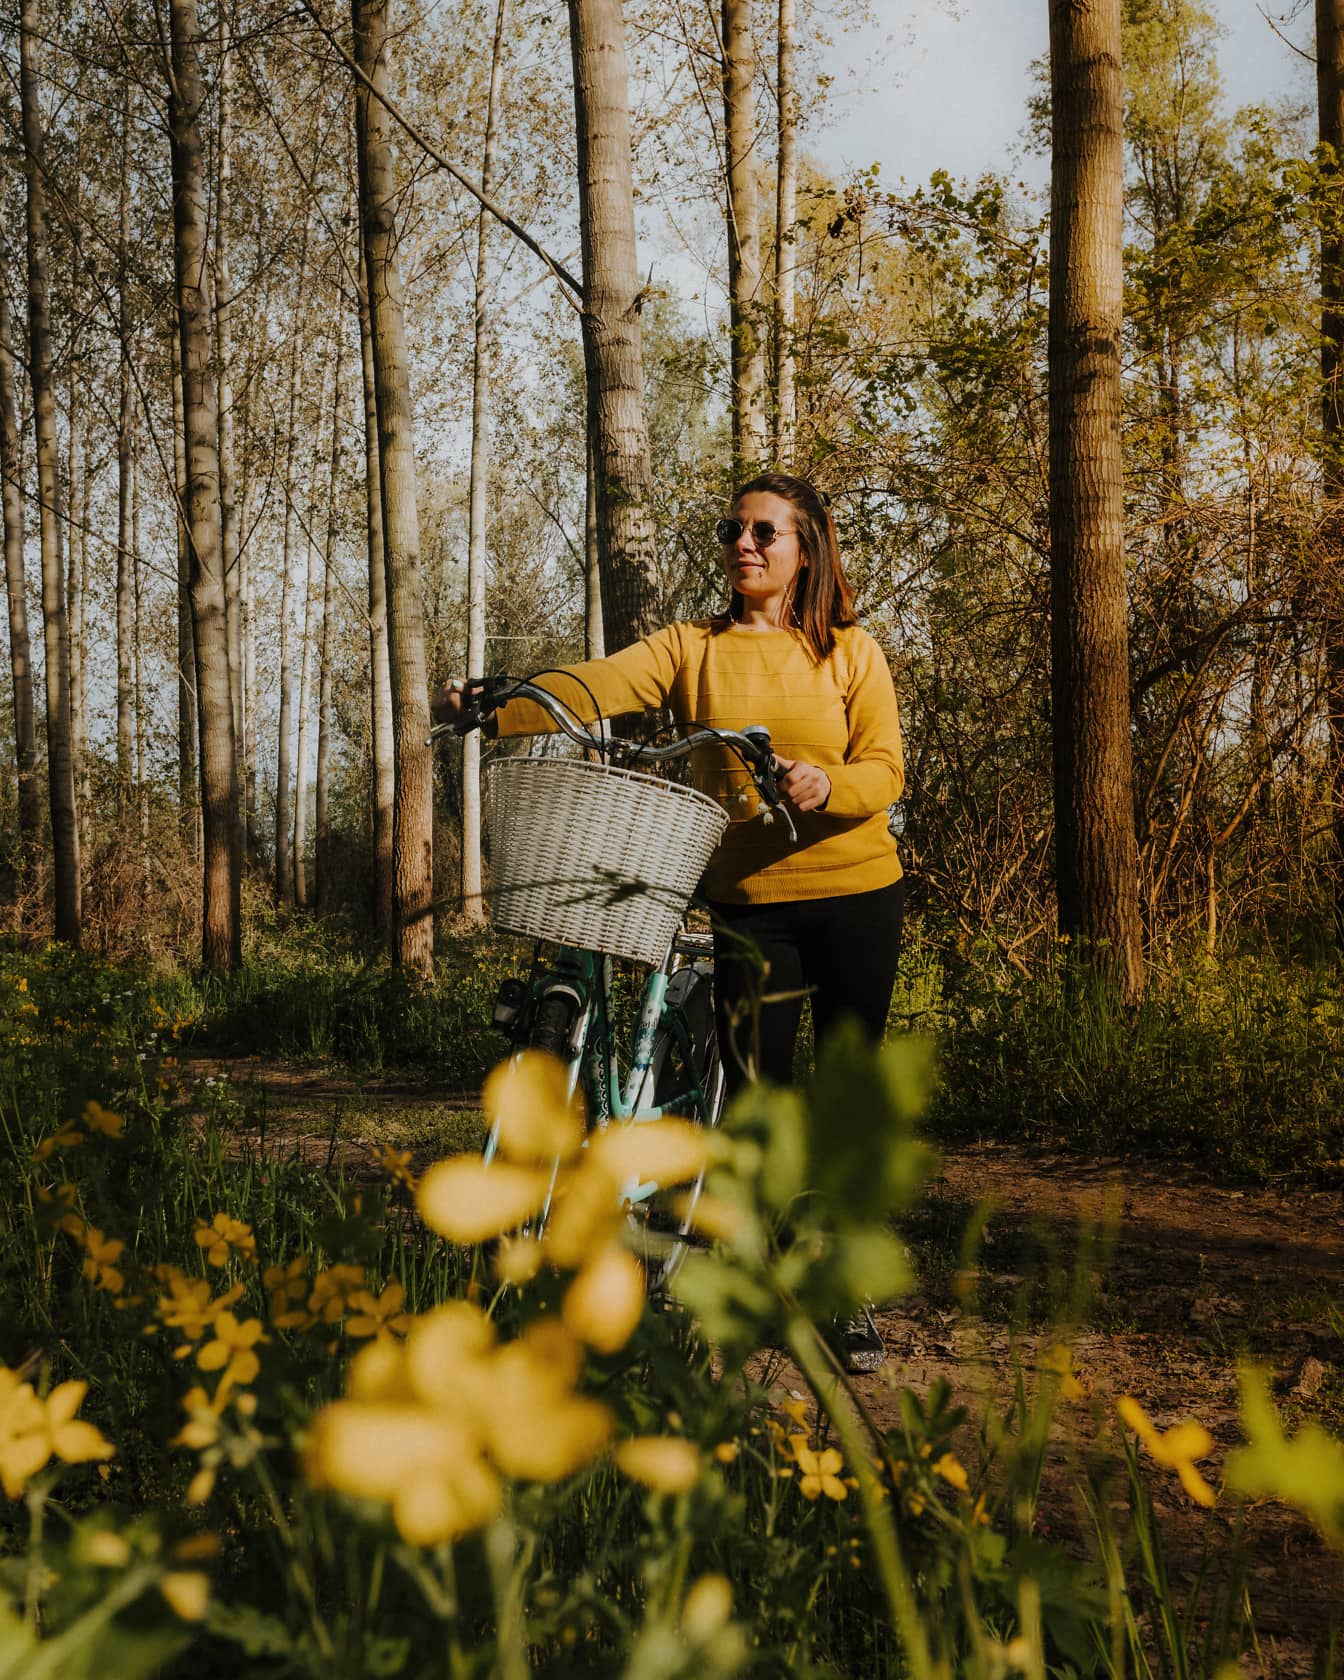 Μια χαρούμενη γυναίκα περπατά σε δασικό μονοπάτι με το ποδήλατό της στο δάσος μια ηλιόλουστη ανοιξιάτικη μέρα